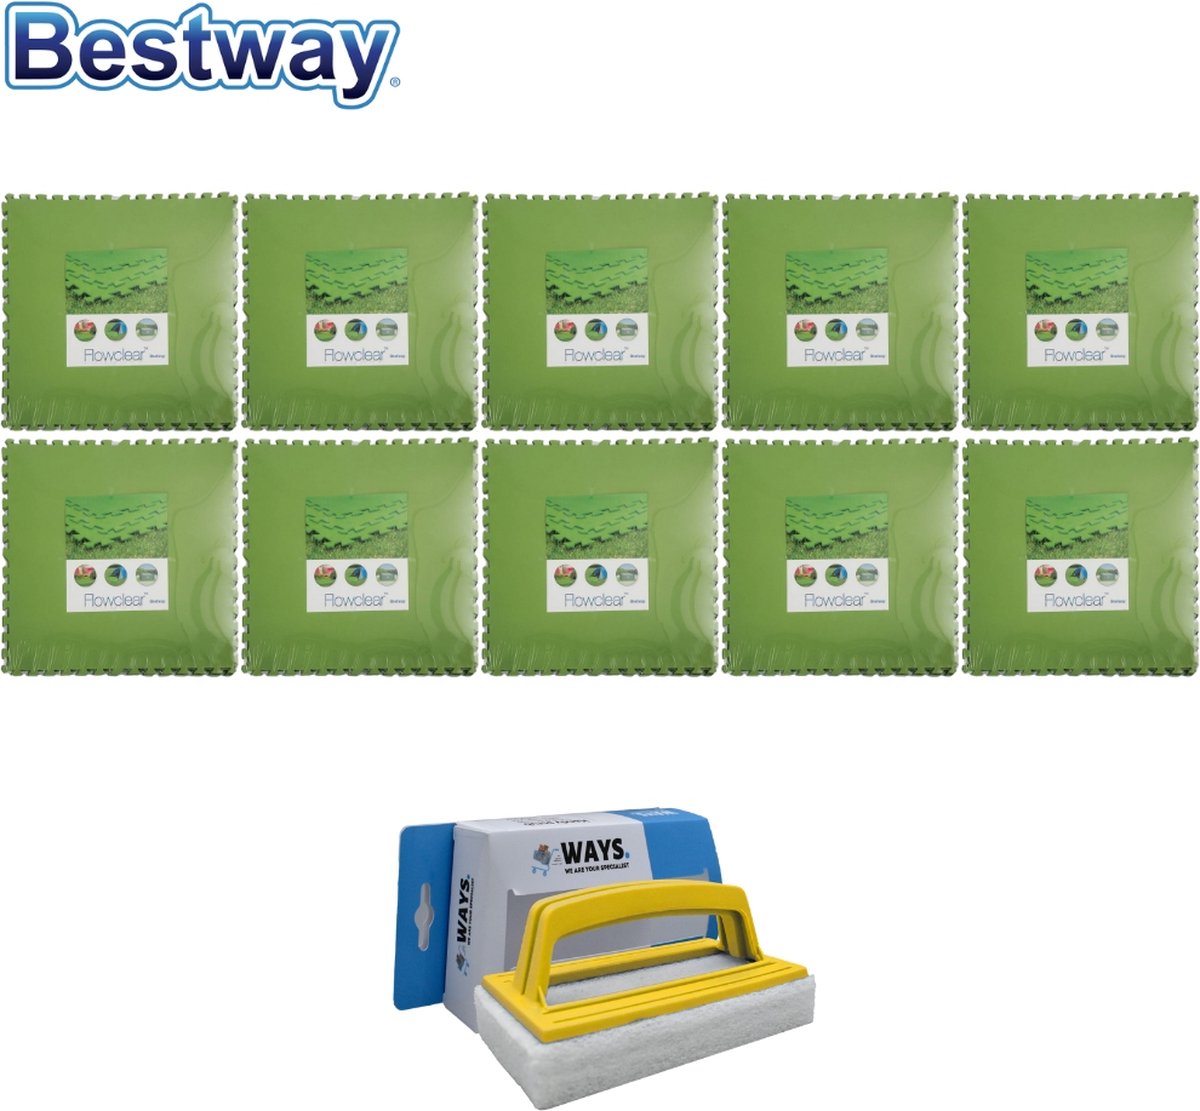 Bestway Flowclear - Voordeelverpakking - Grondtegels - 10 Verpakkingen Van 9 Stuks & Ways Scrubborstel